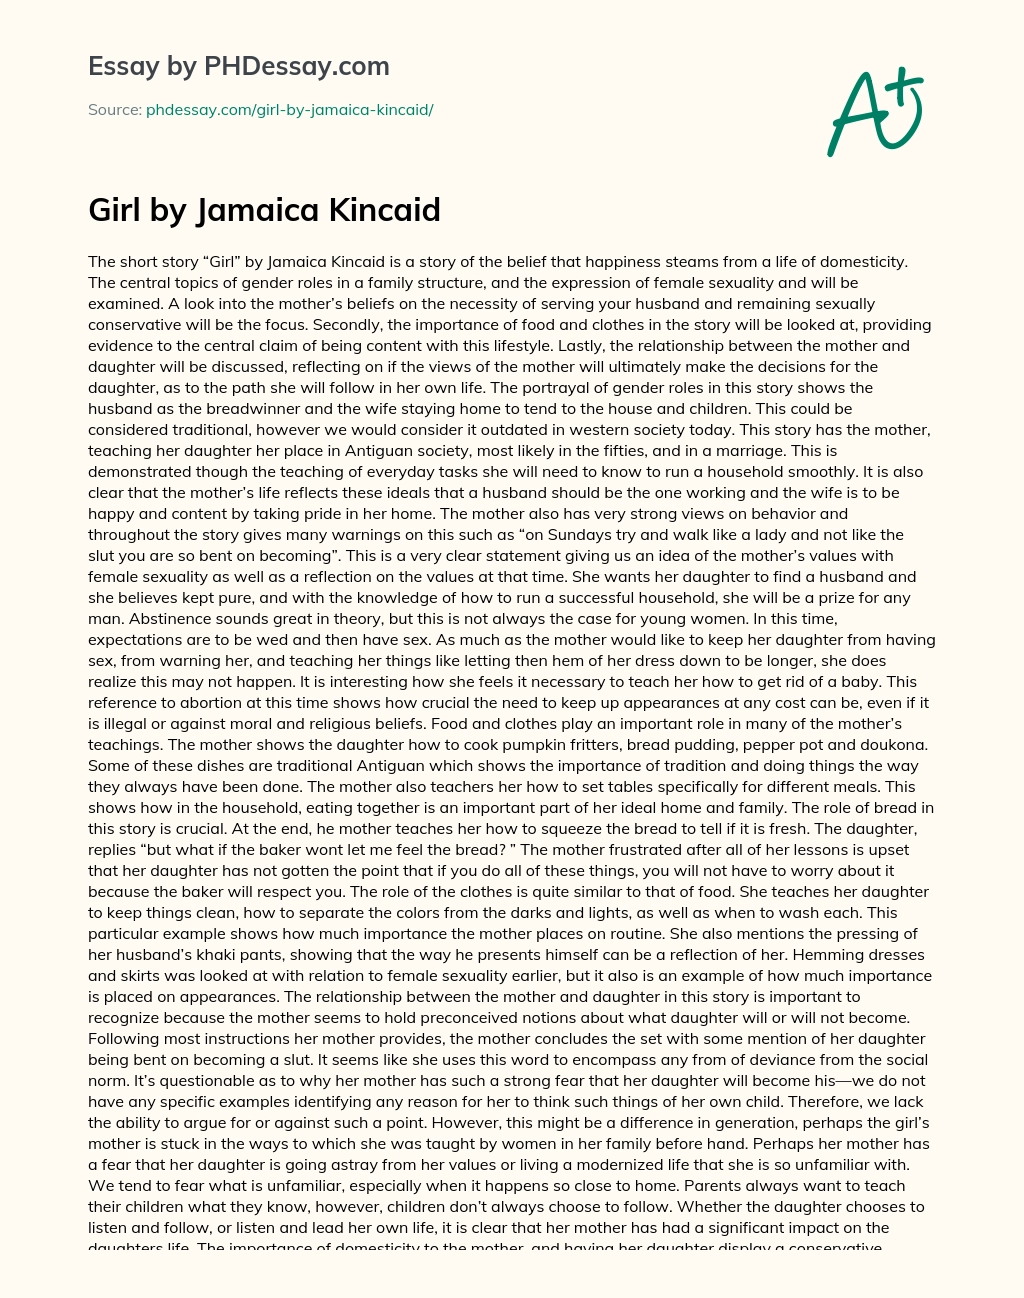 Girl by Jamaica Kincaid essay